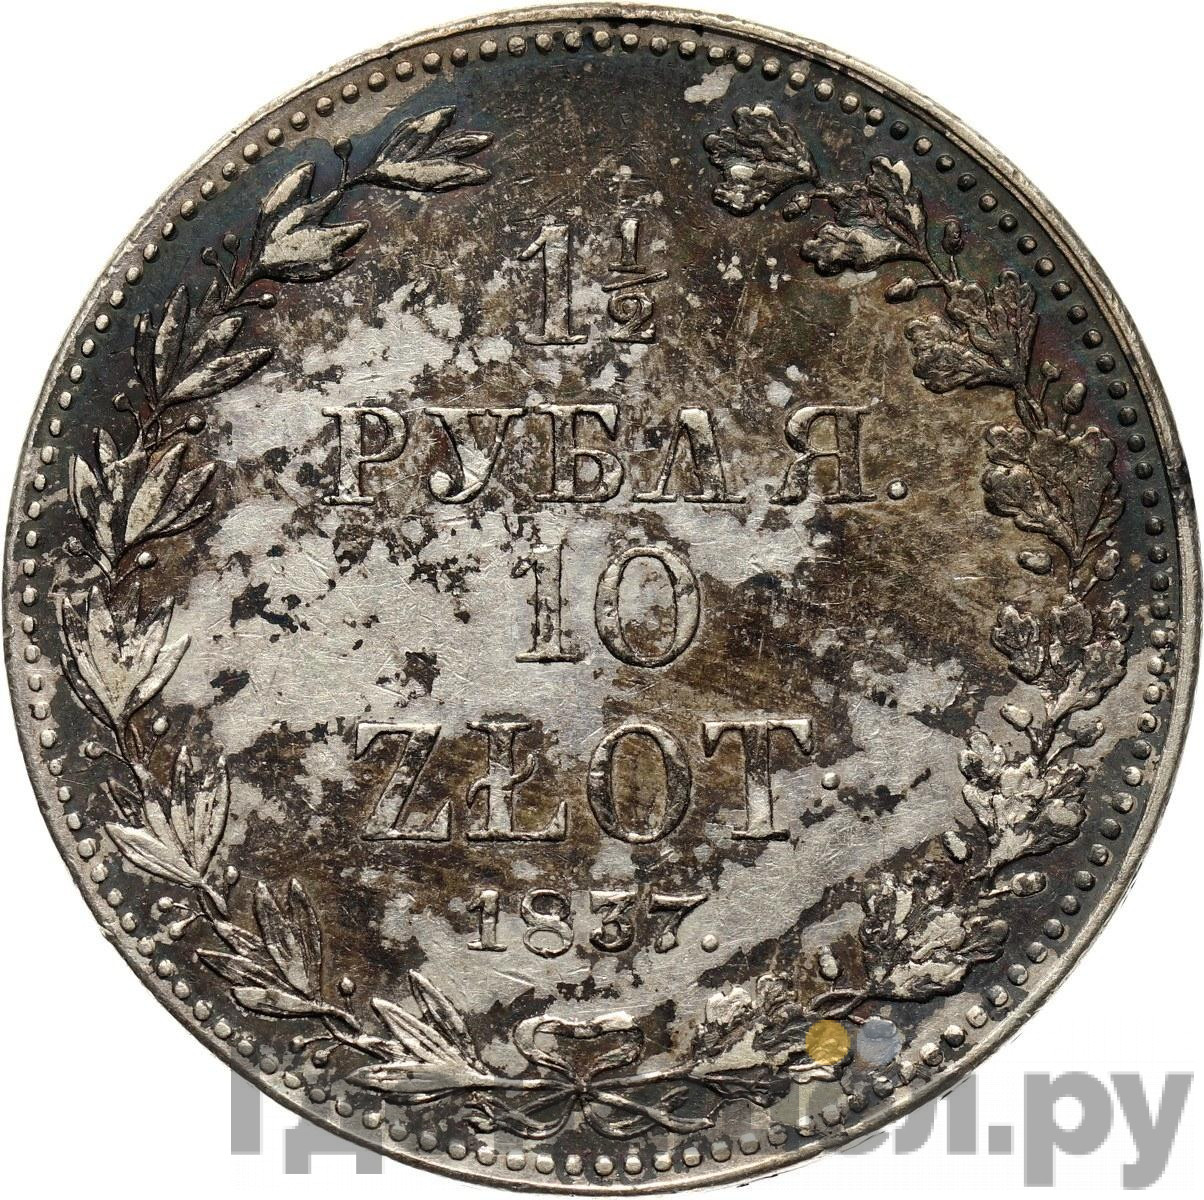 1 1/2 рубля - 10 злотых 1837 года